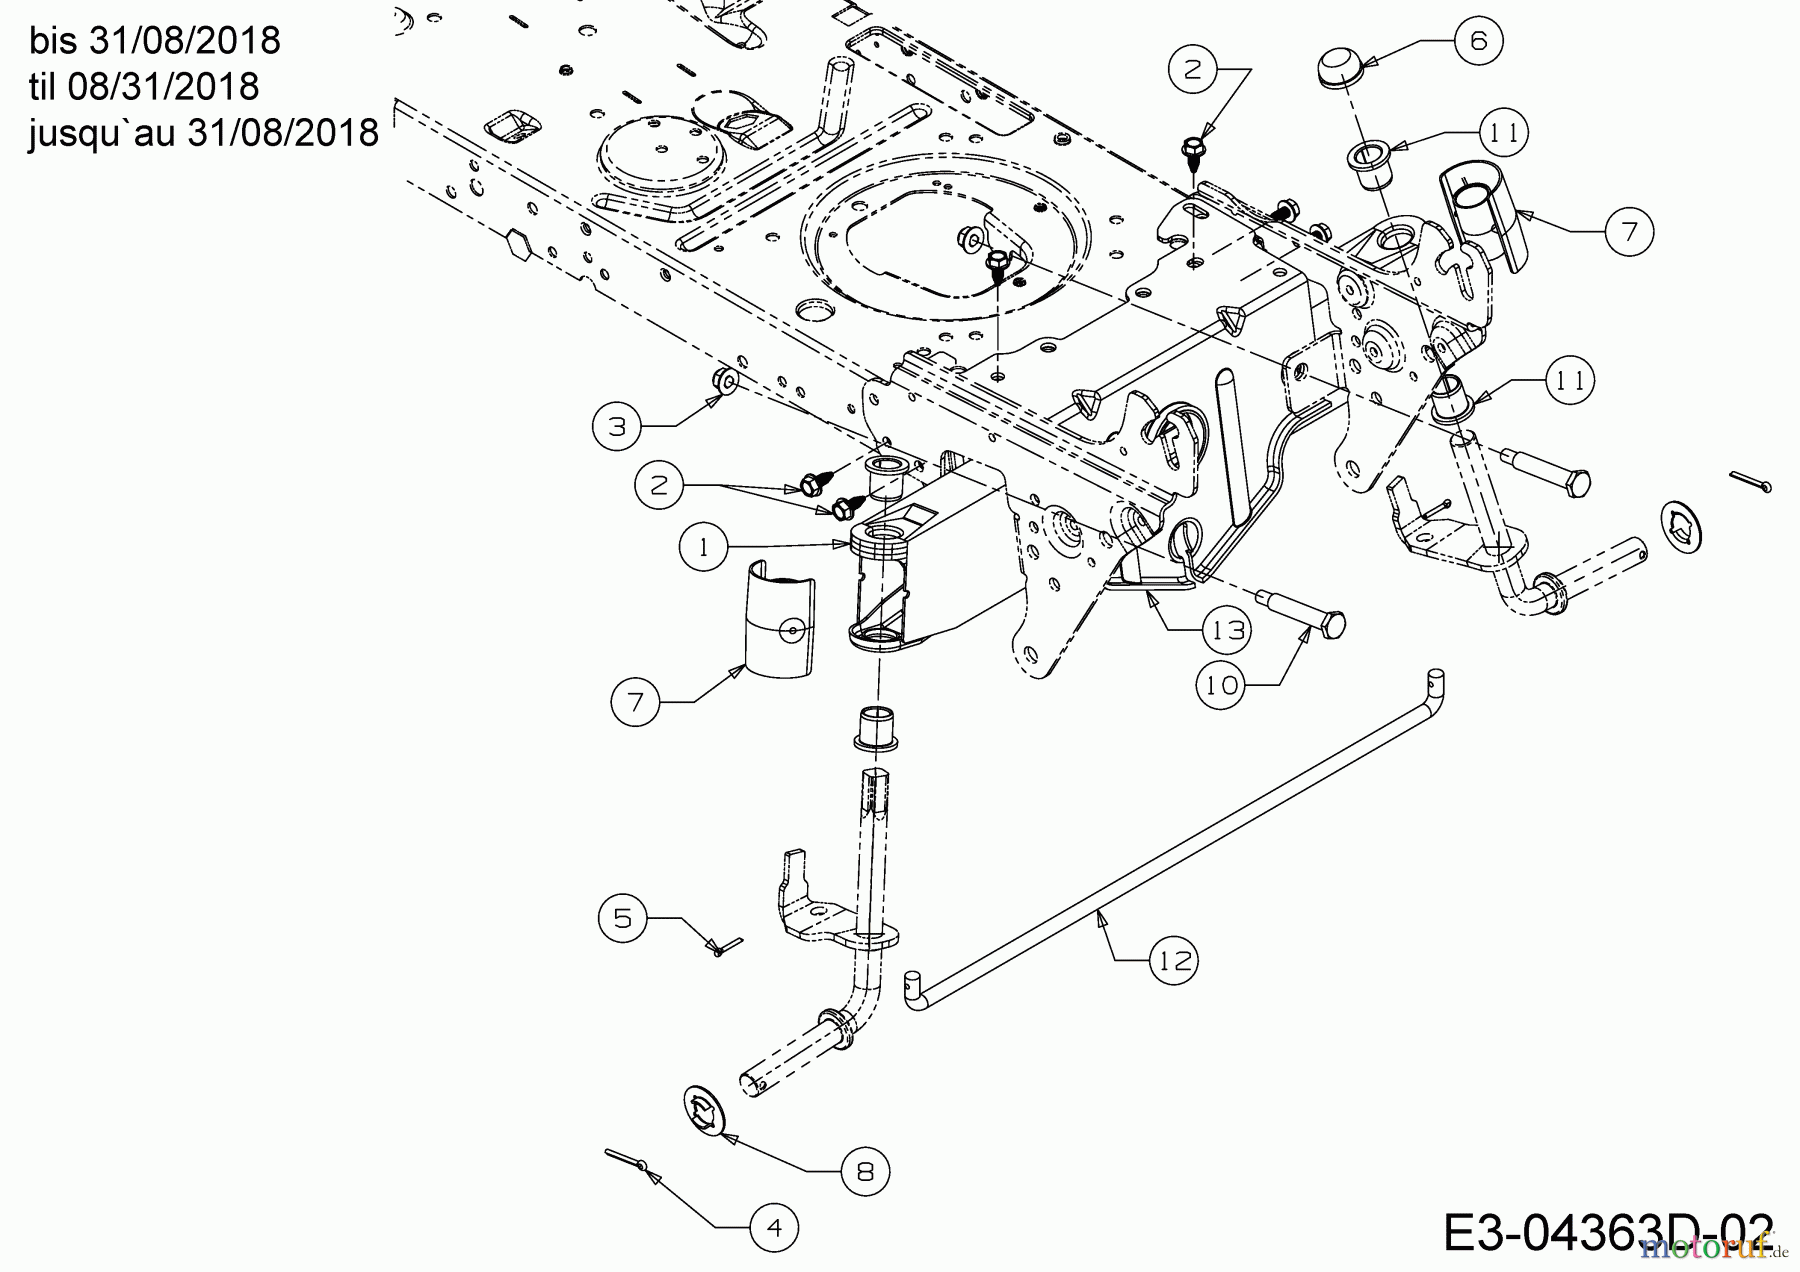  Helington Rasentraktoren H 96 HB 13HM79KF686  (2018) Vorderachse bis 31/08/2018